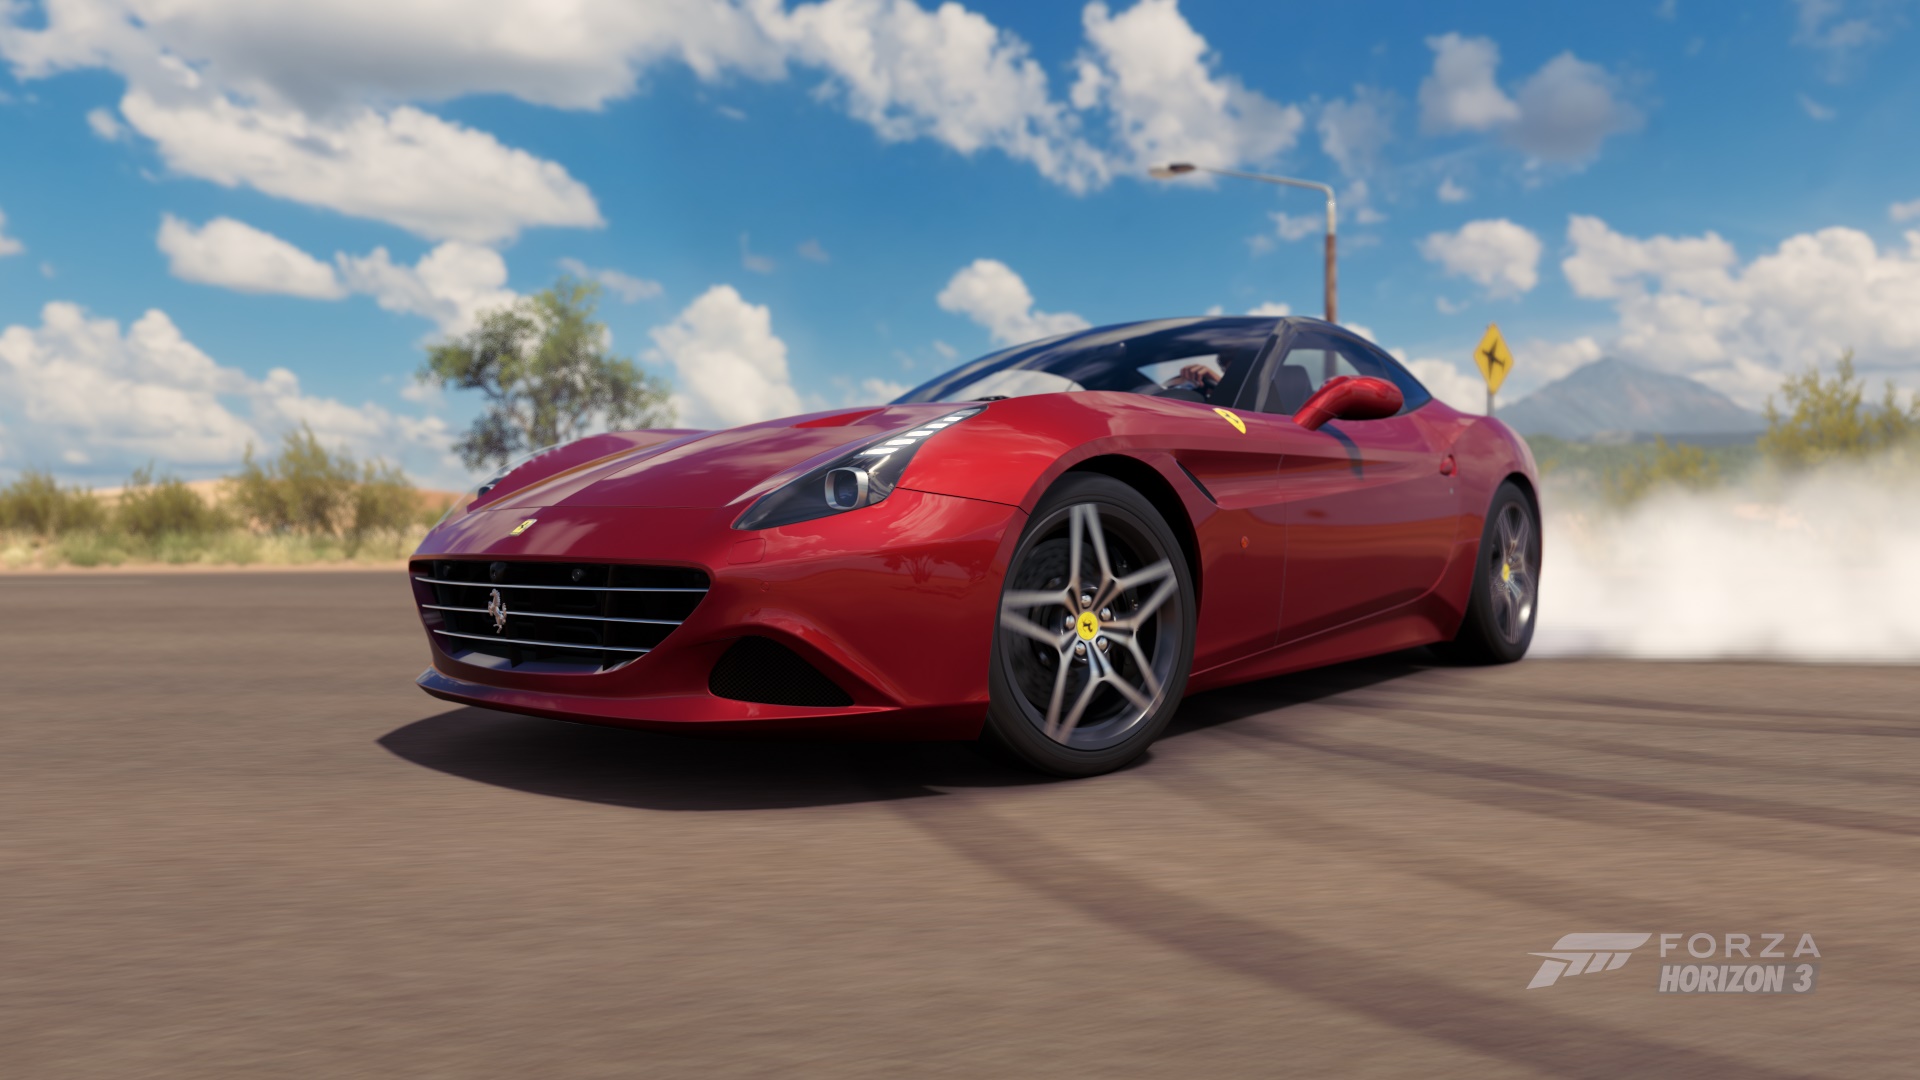 Descarga gratuita de fondo de pantalla para móvil de Ferrari, Fuerza, Ferrari California, Videojuego, Forza Horizon 3.